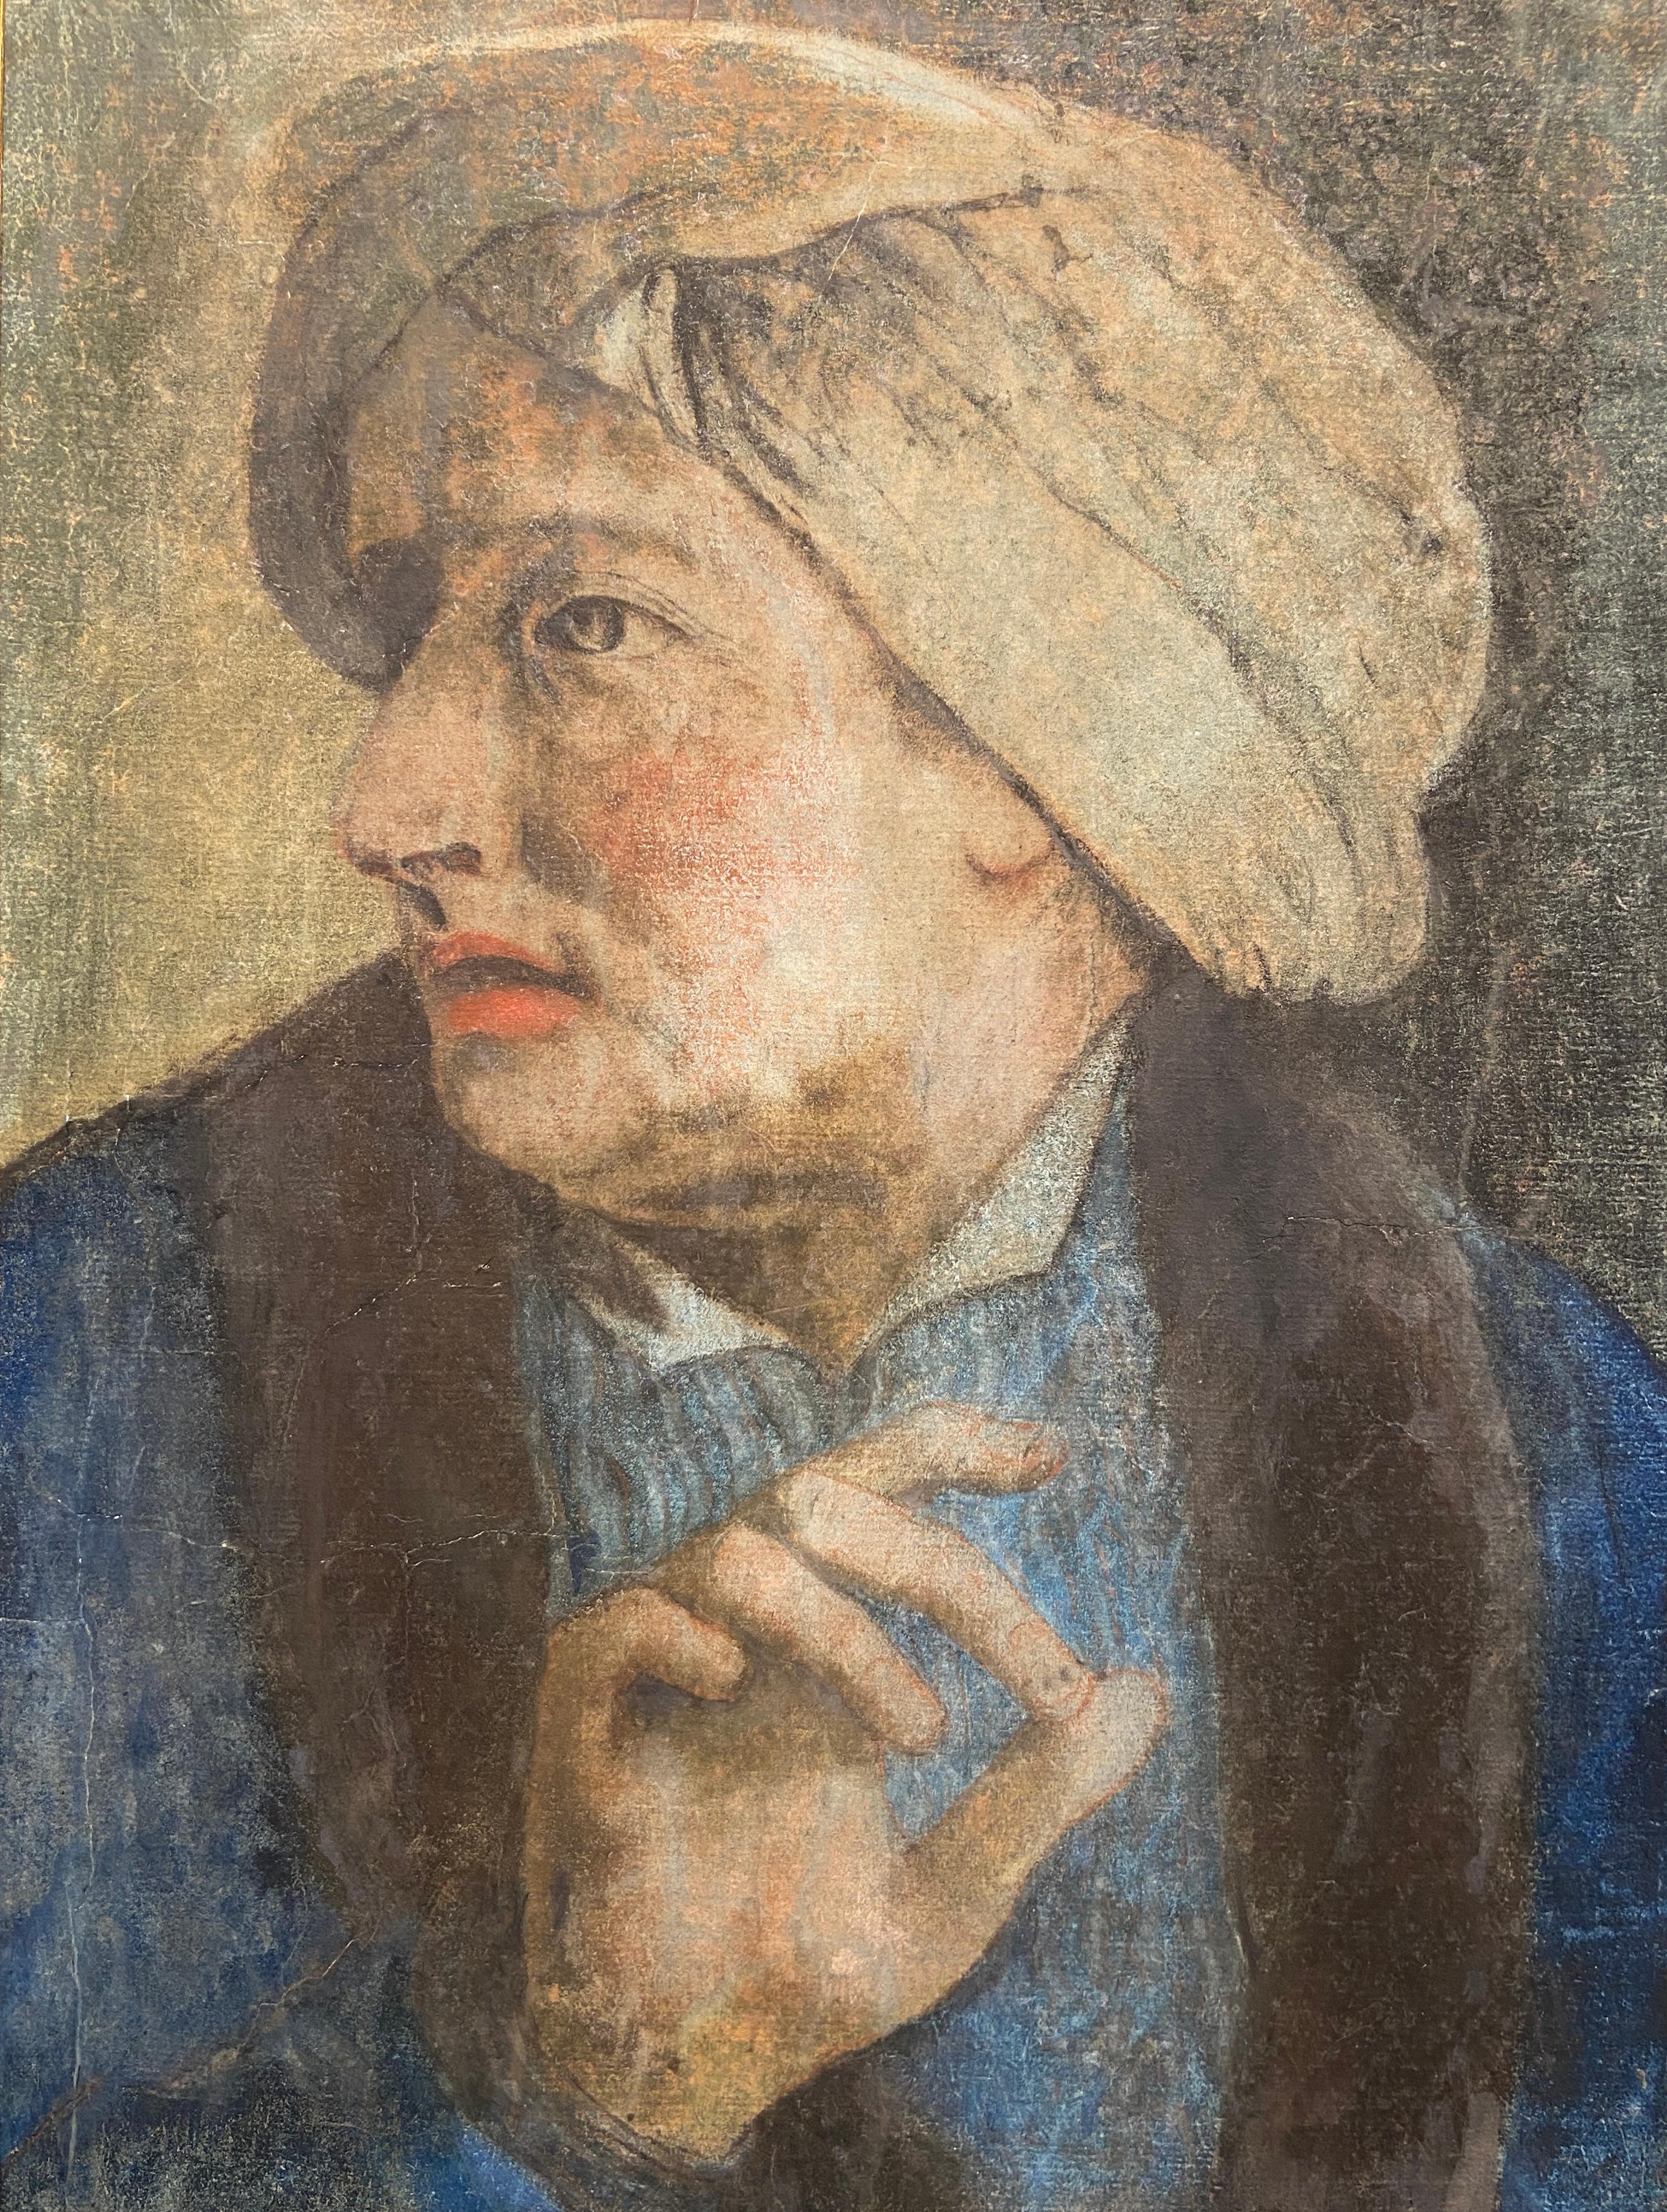 Porträt eines Mannes, der einen Turban trägt, Pastellzeichnung aus dem 18. Jahrhundert